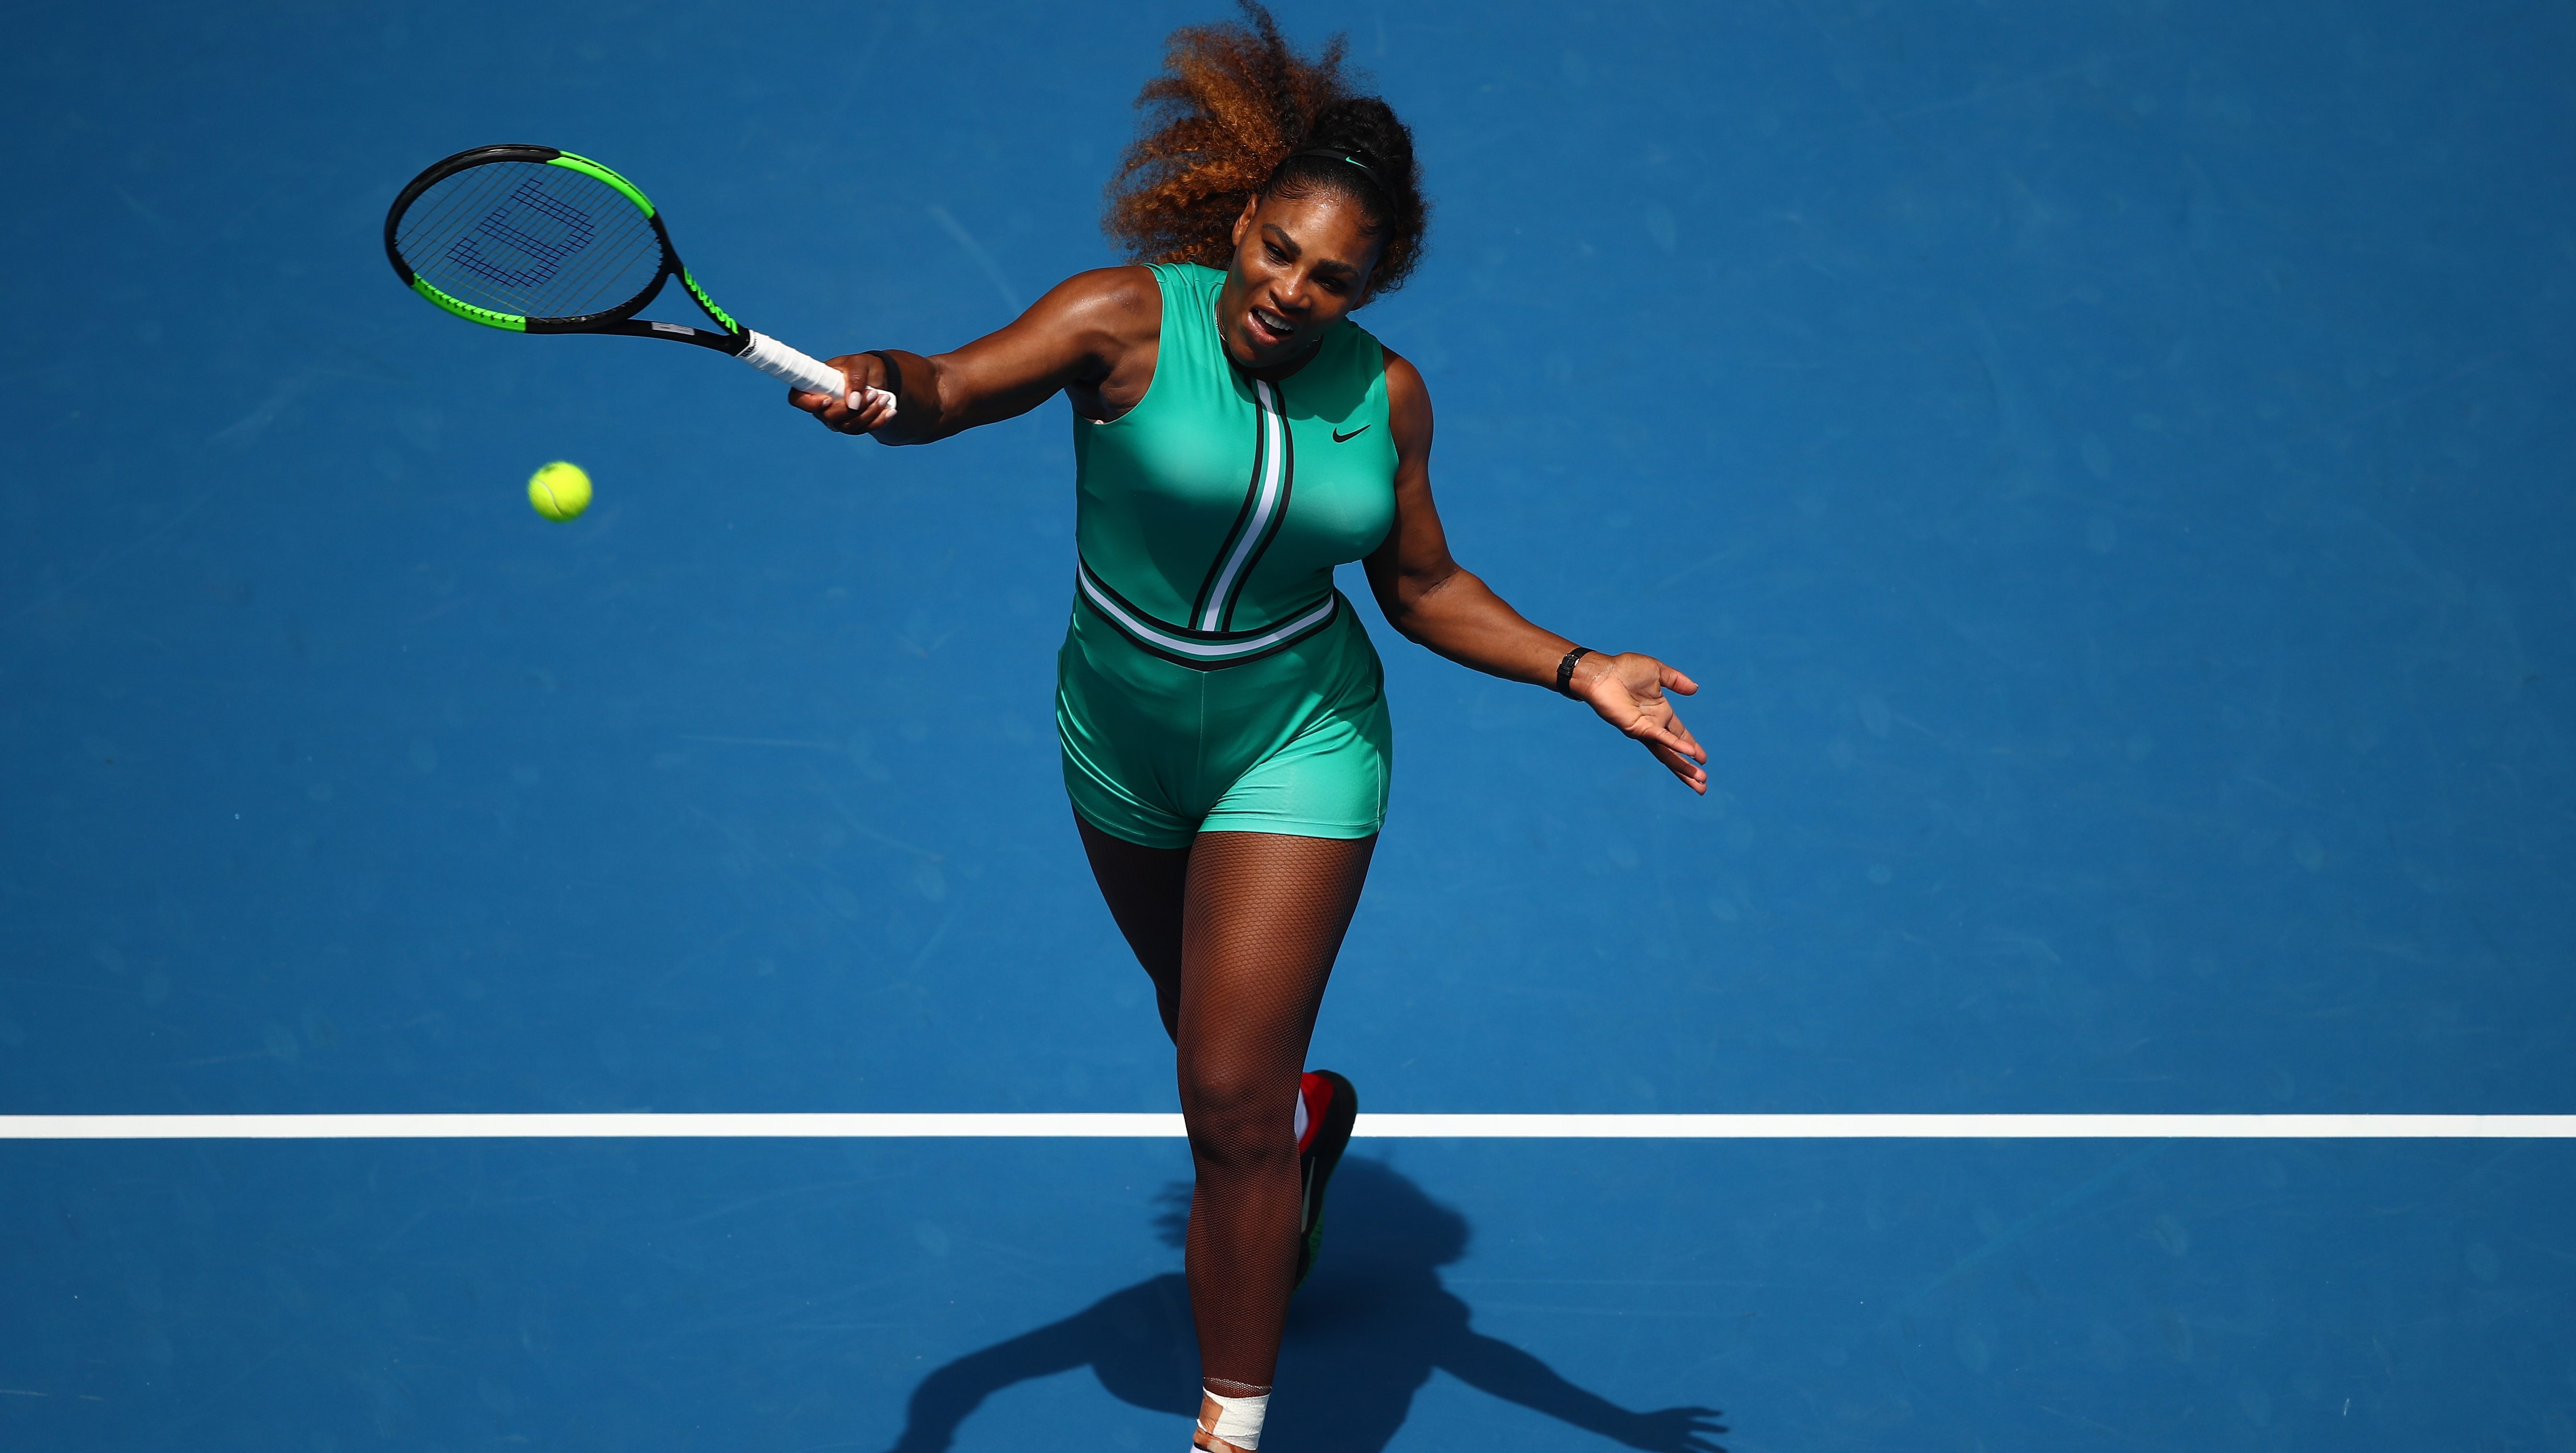 How to Watch Serena vs Bouchard Online [Australian Open]